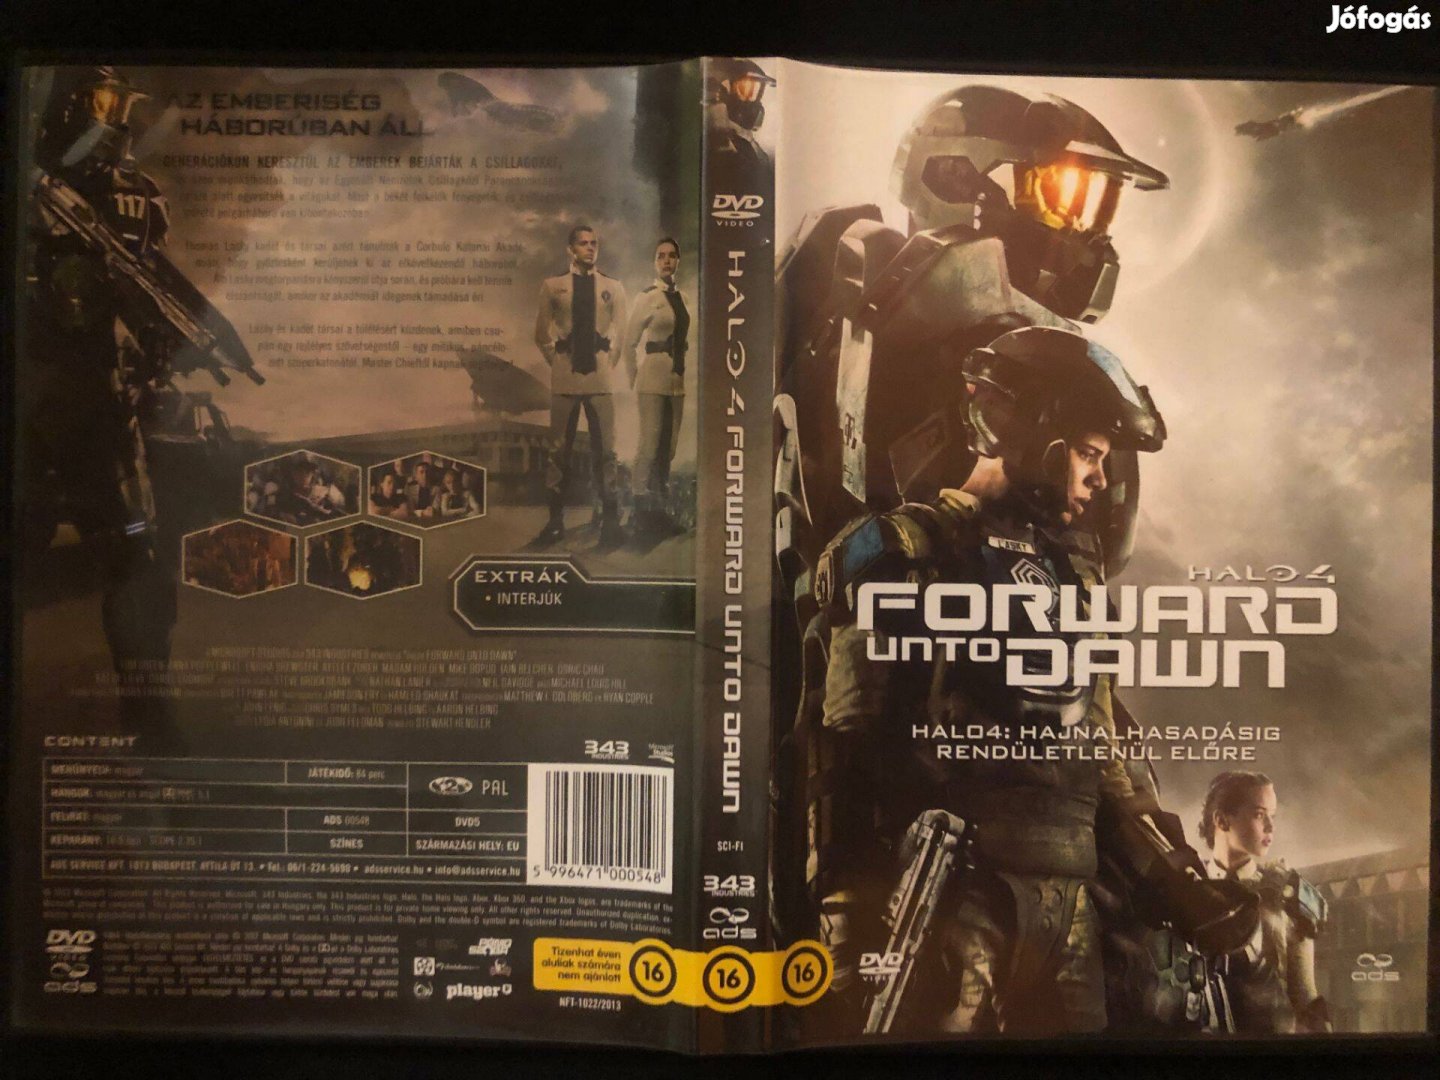 Halo 4. Hajnalhasadásig rendületlenül előre DVD (Tom Green)